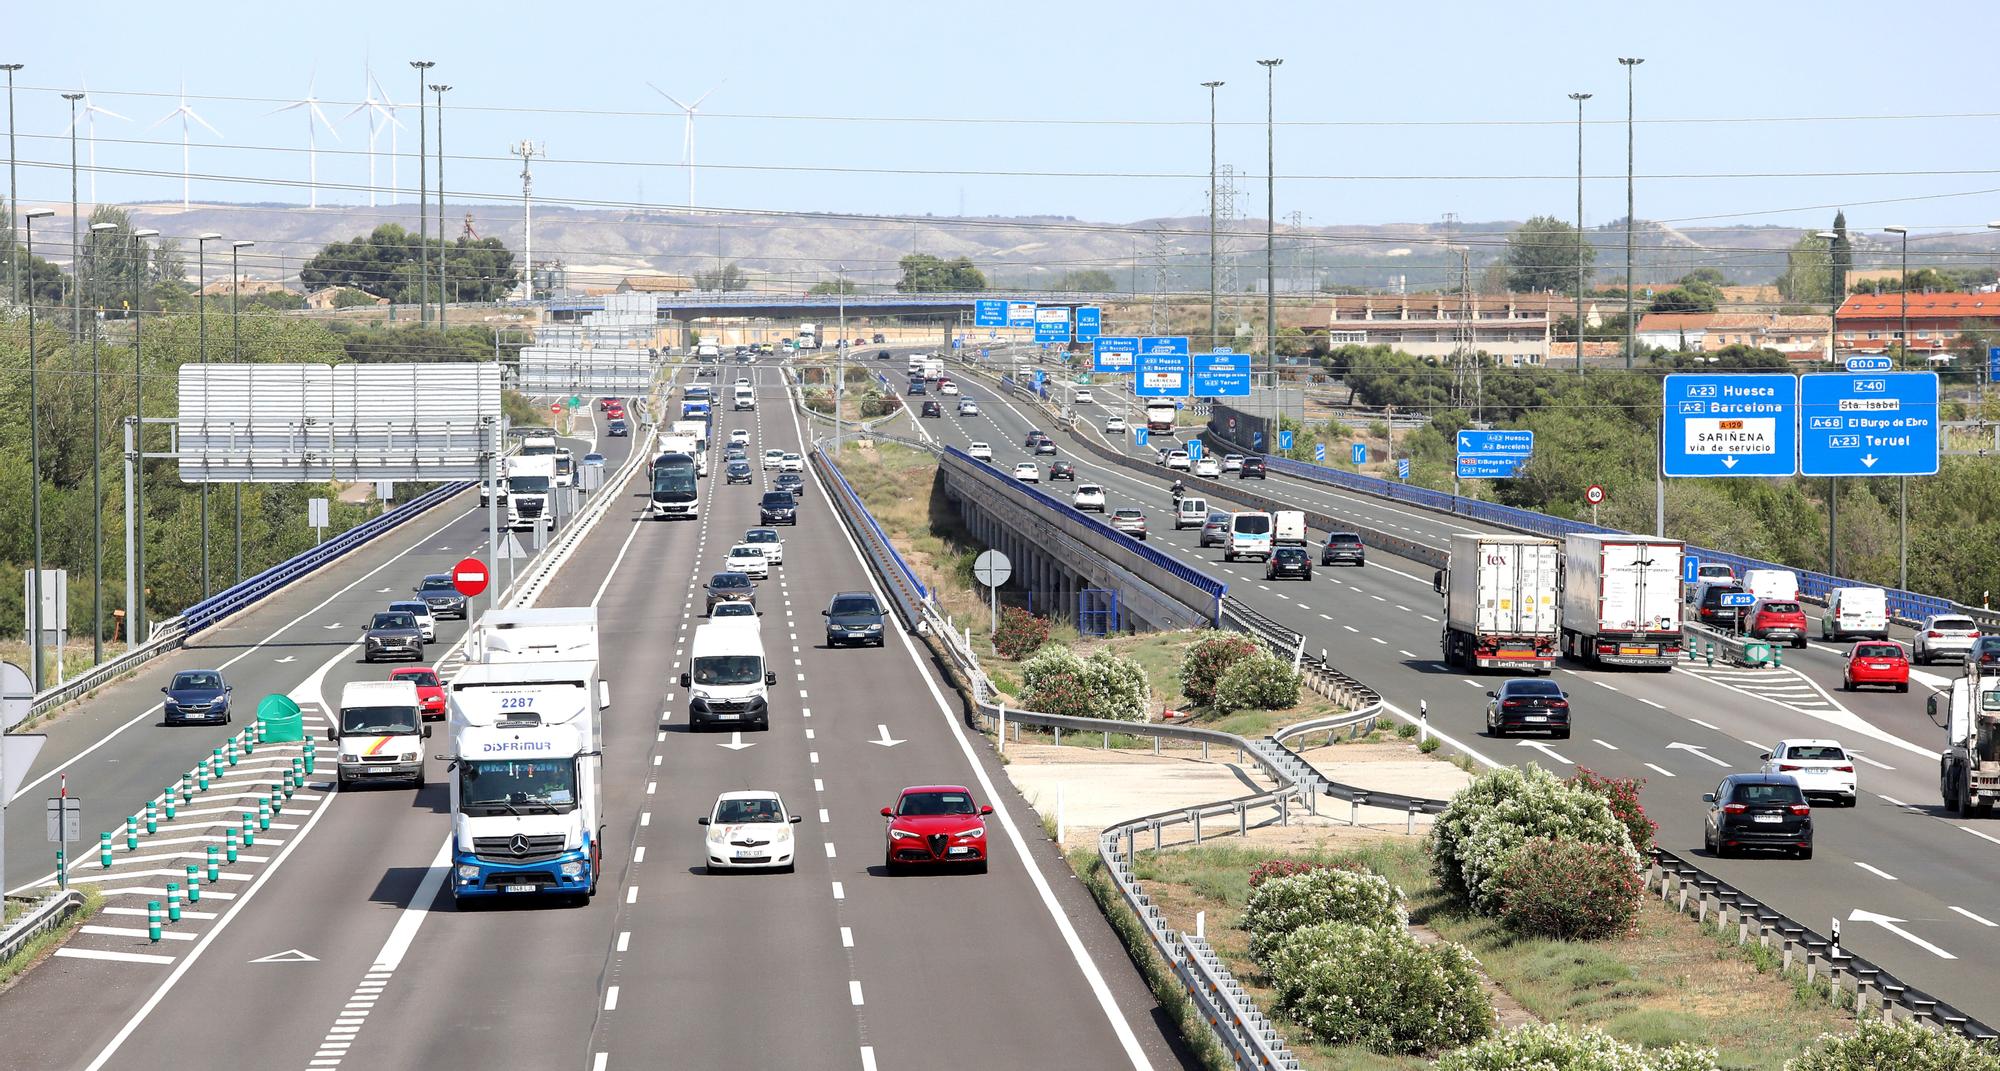 Comienza la operación salida en Aragón: más de 300.000 vehículos este fin de semana